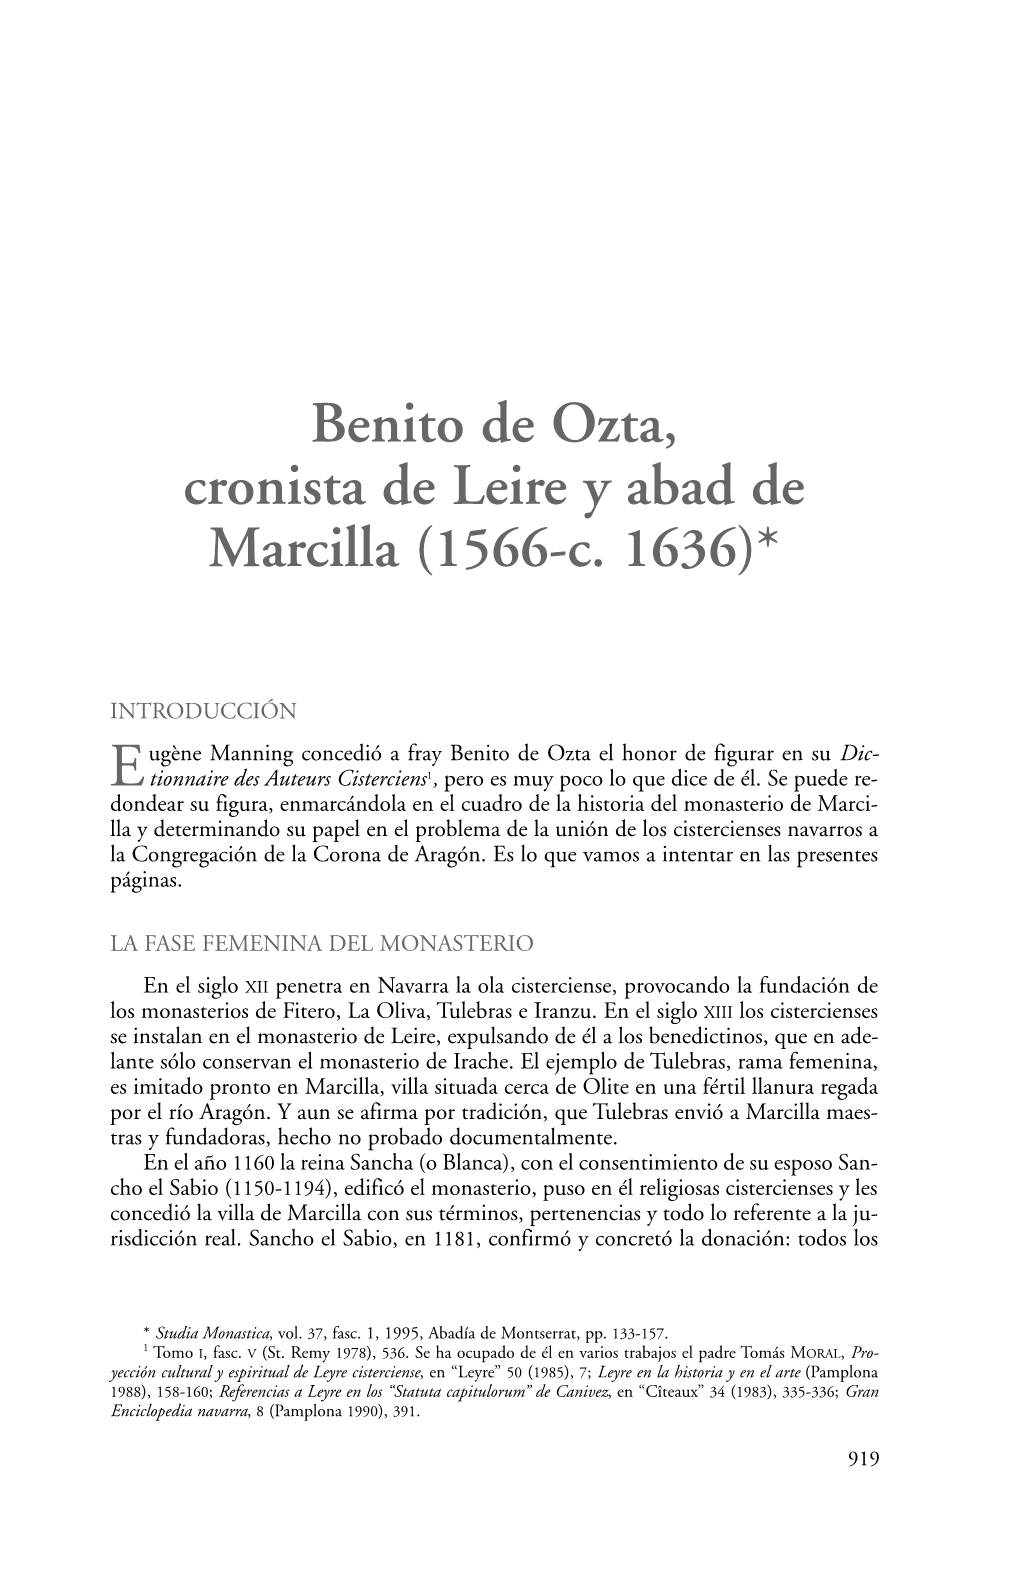 Benito De Ozta, Cronista De Leire Y Abad De Marcilla (1566-C. 1636)*